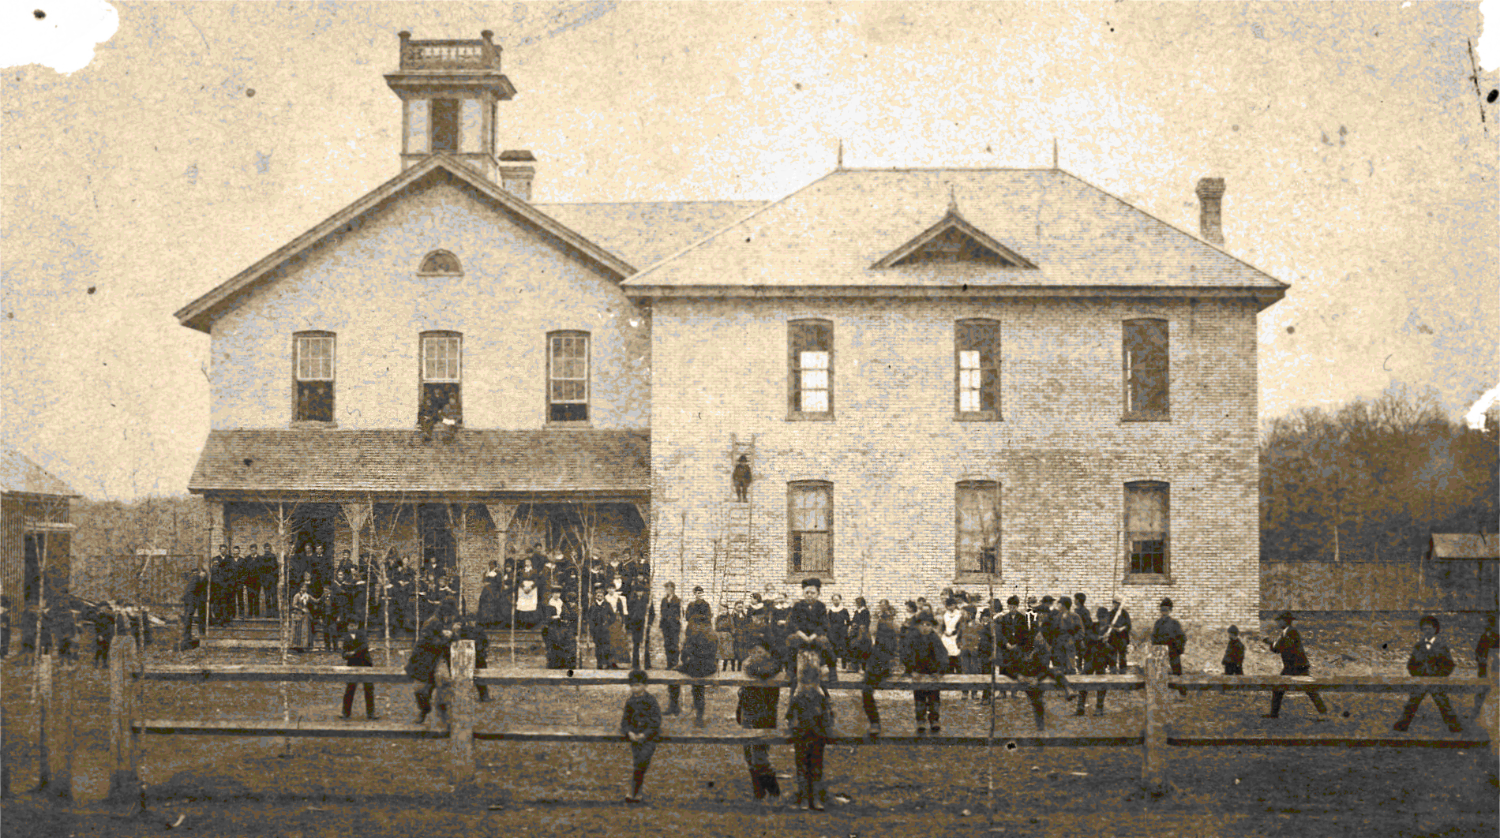 1882 school